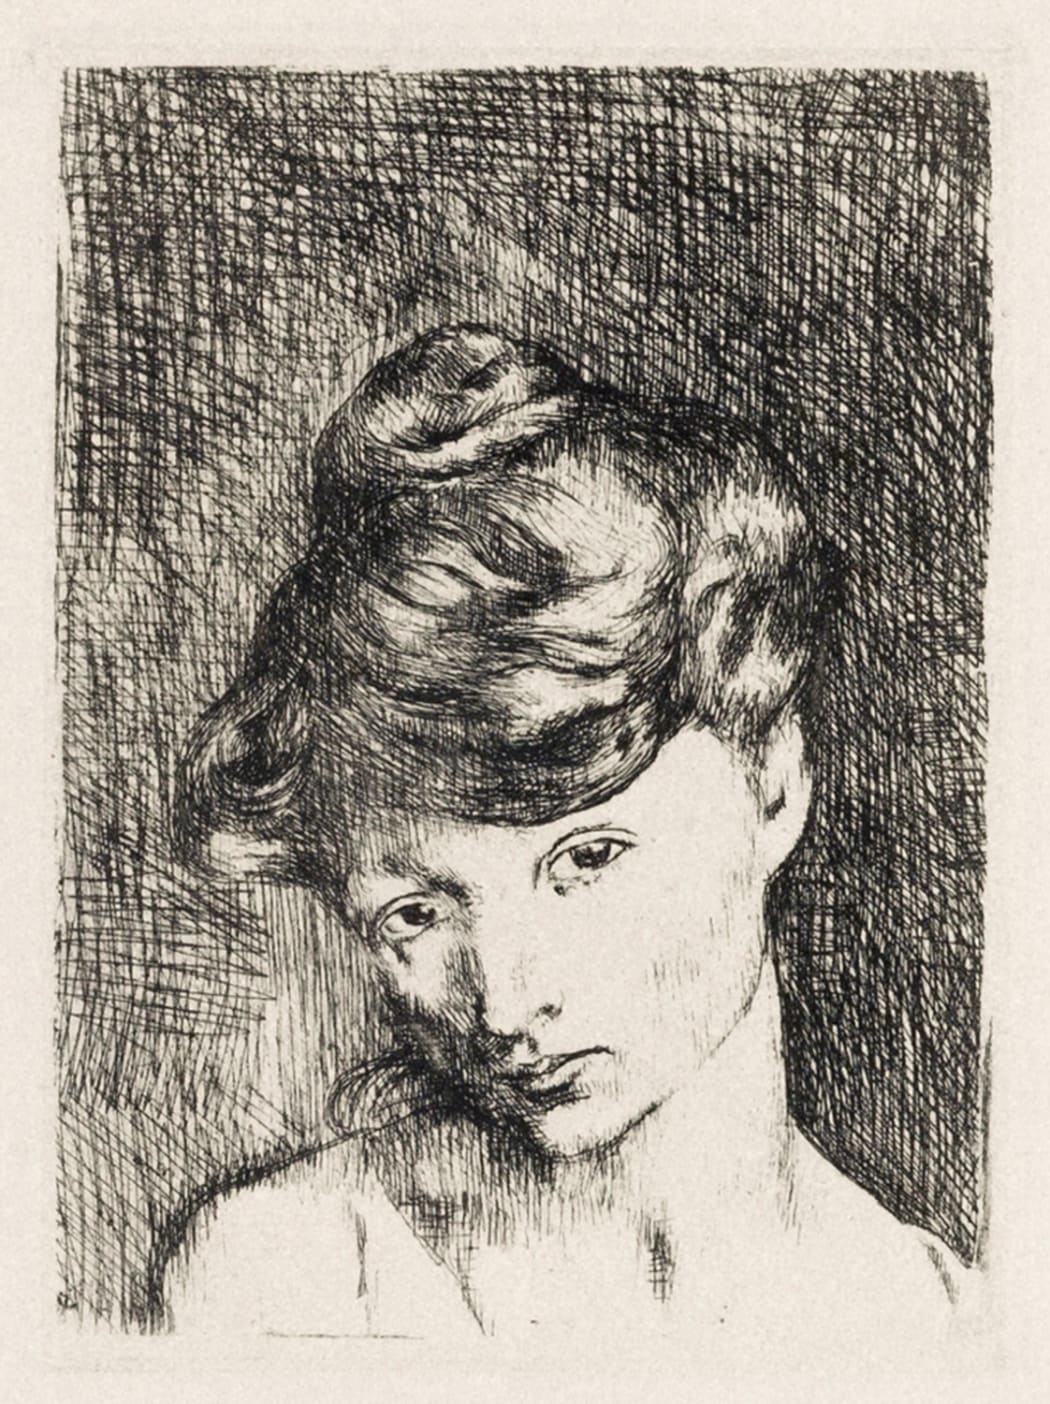 Tête de Femme: Madeleine (Bloch 2), 1905, etching, 4 3/4 x 3 1/2 inches